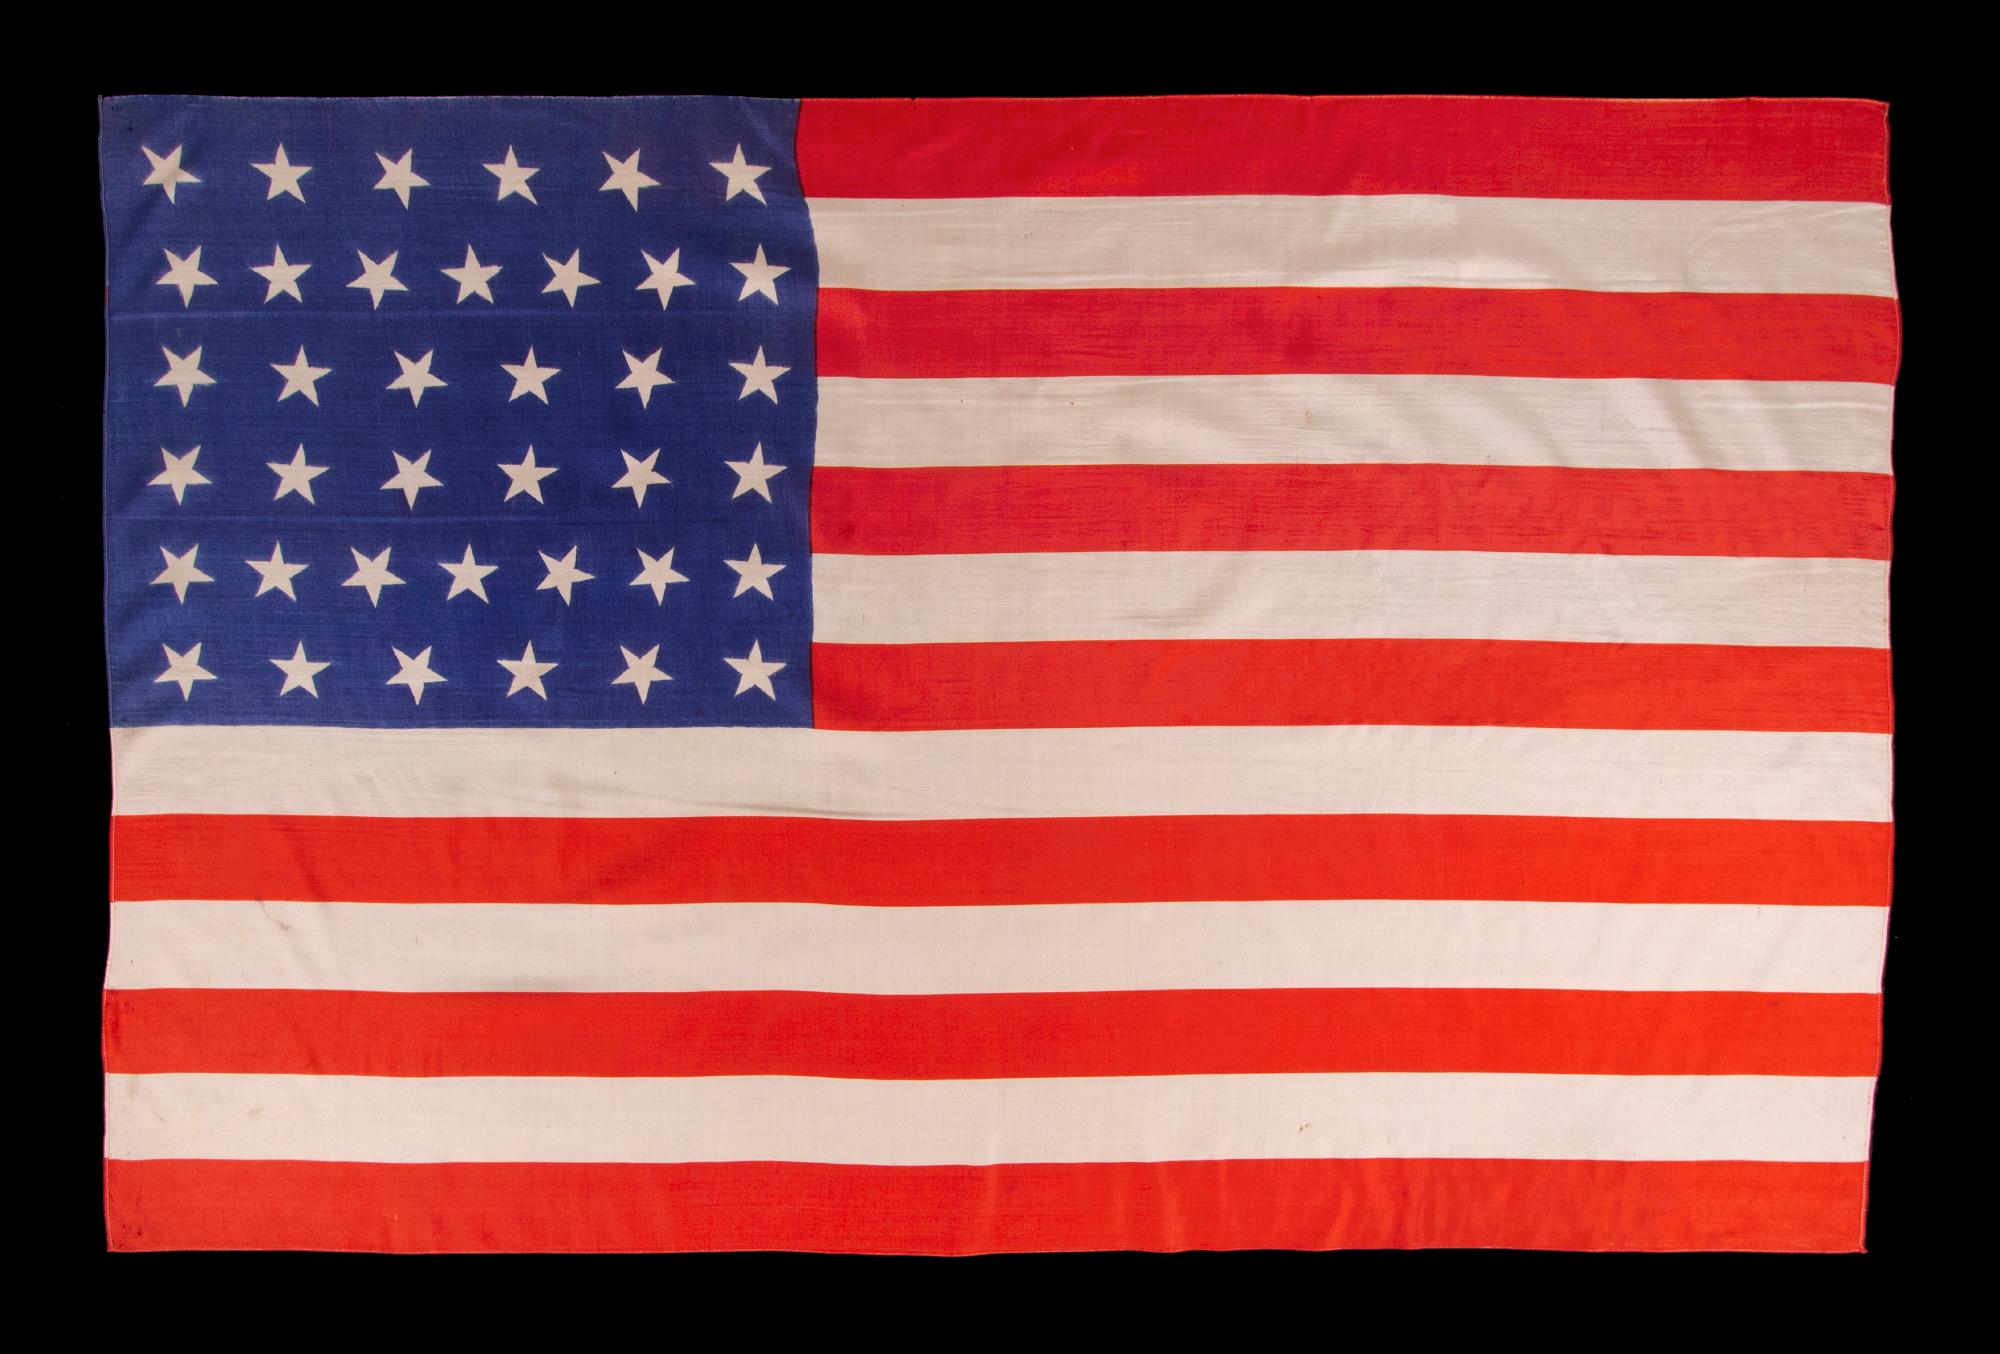 drapeau de parade américain ancien à 38 étoiles, avec orientation des étoiles dispersées, en soie, avec une échelle généreuse et des couleurs vives, Colorado Statehood, 1876-1889

drapeau de parade national américain à 38 étoiles, imprimé sur